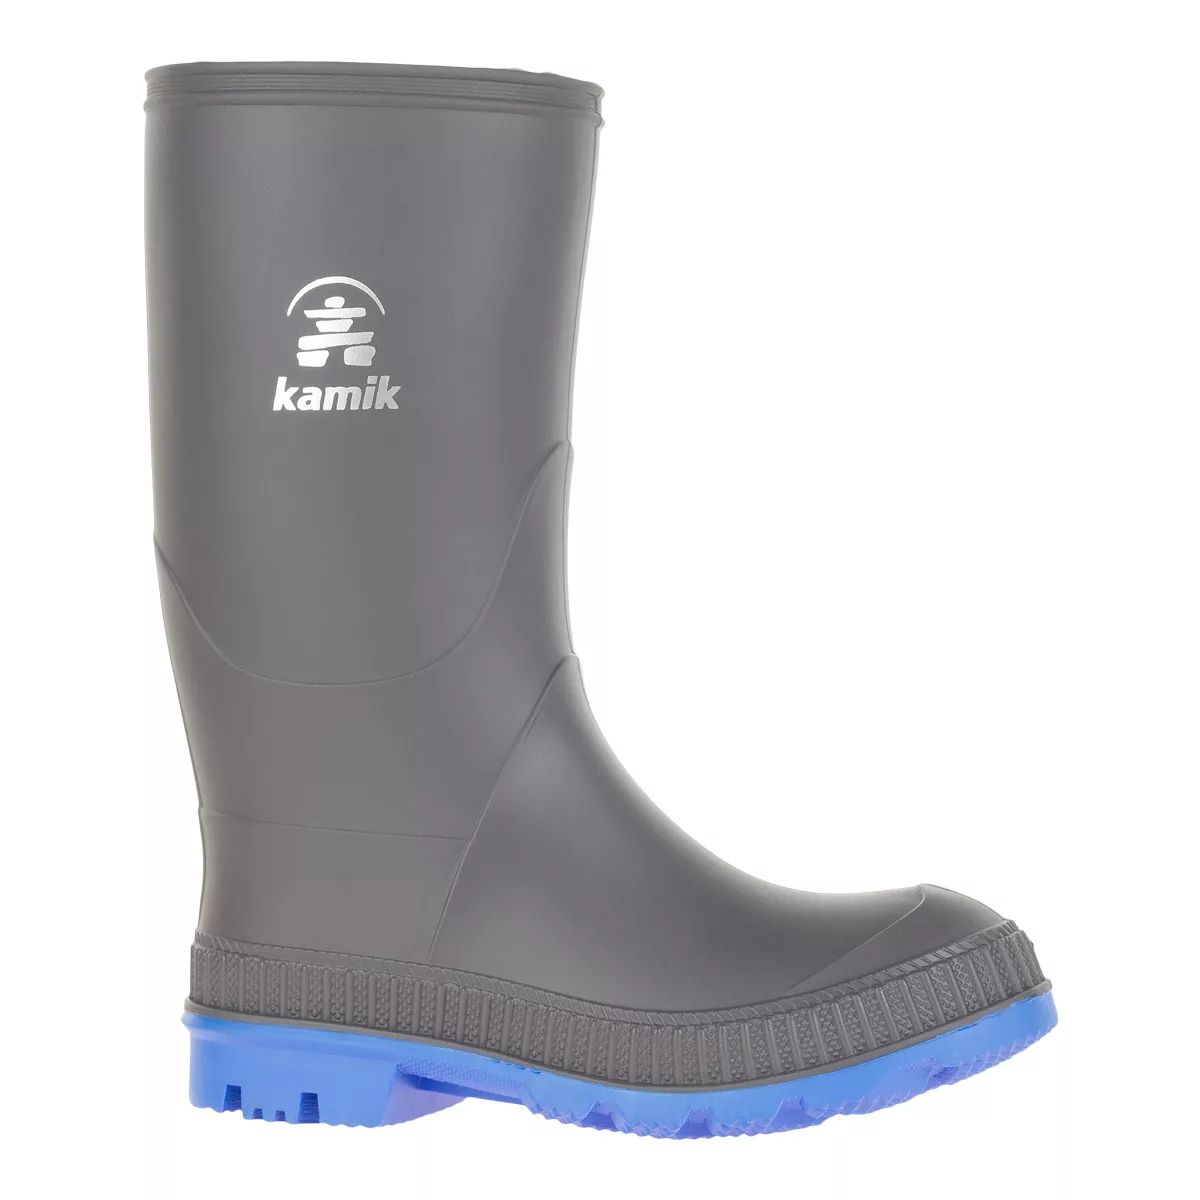 Kamik Kids' Pre-School/Grade School Stomp Rubber Rain Boots  Boys'/Girls' Waterproof